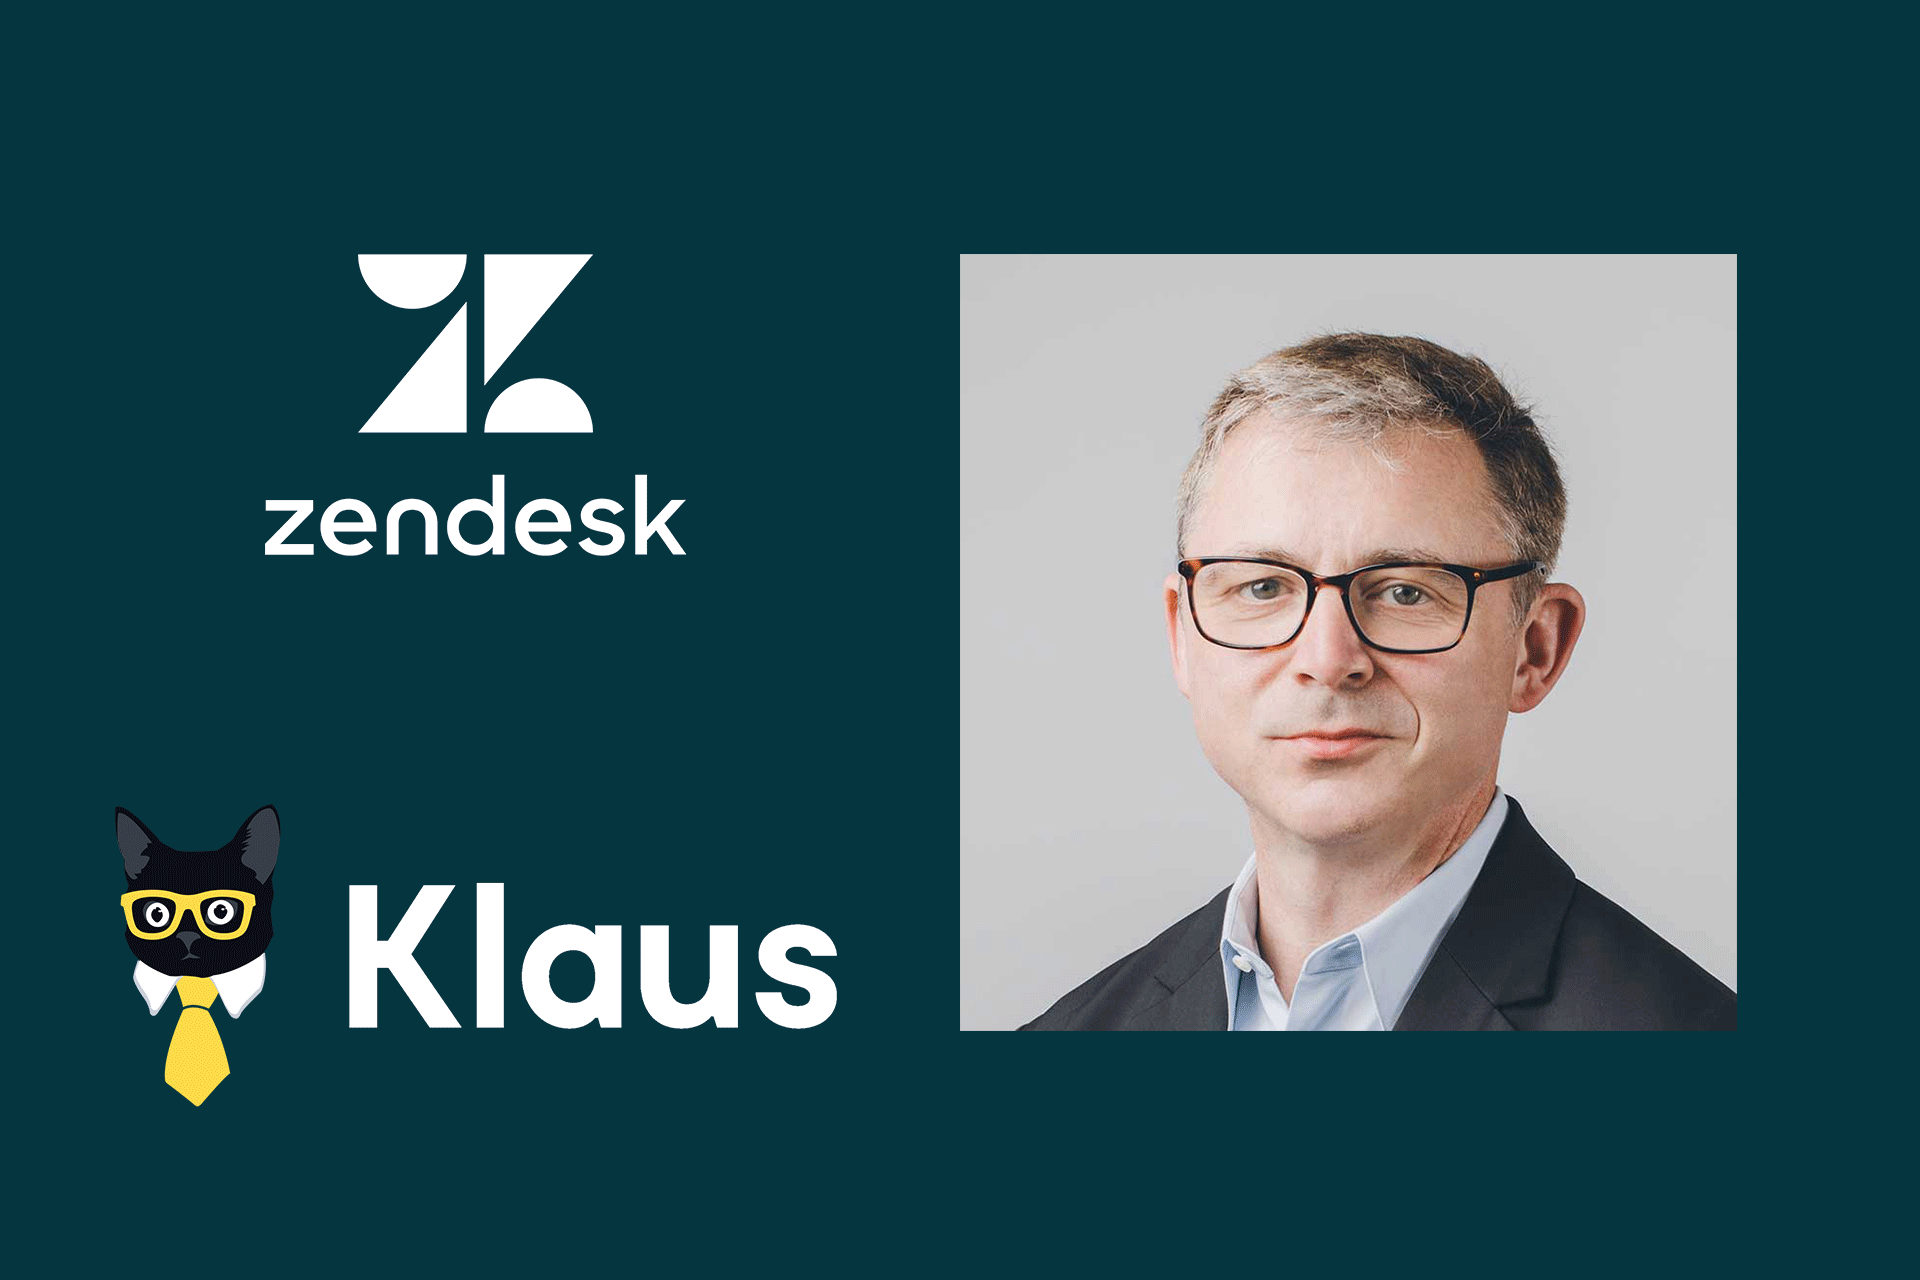 Zendesk schliesst Übernahme von Klaus ab_cmm360.ch_Bild:https://www.zendesk.com_cmm360.ch